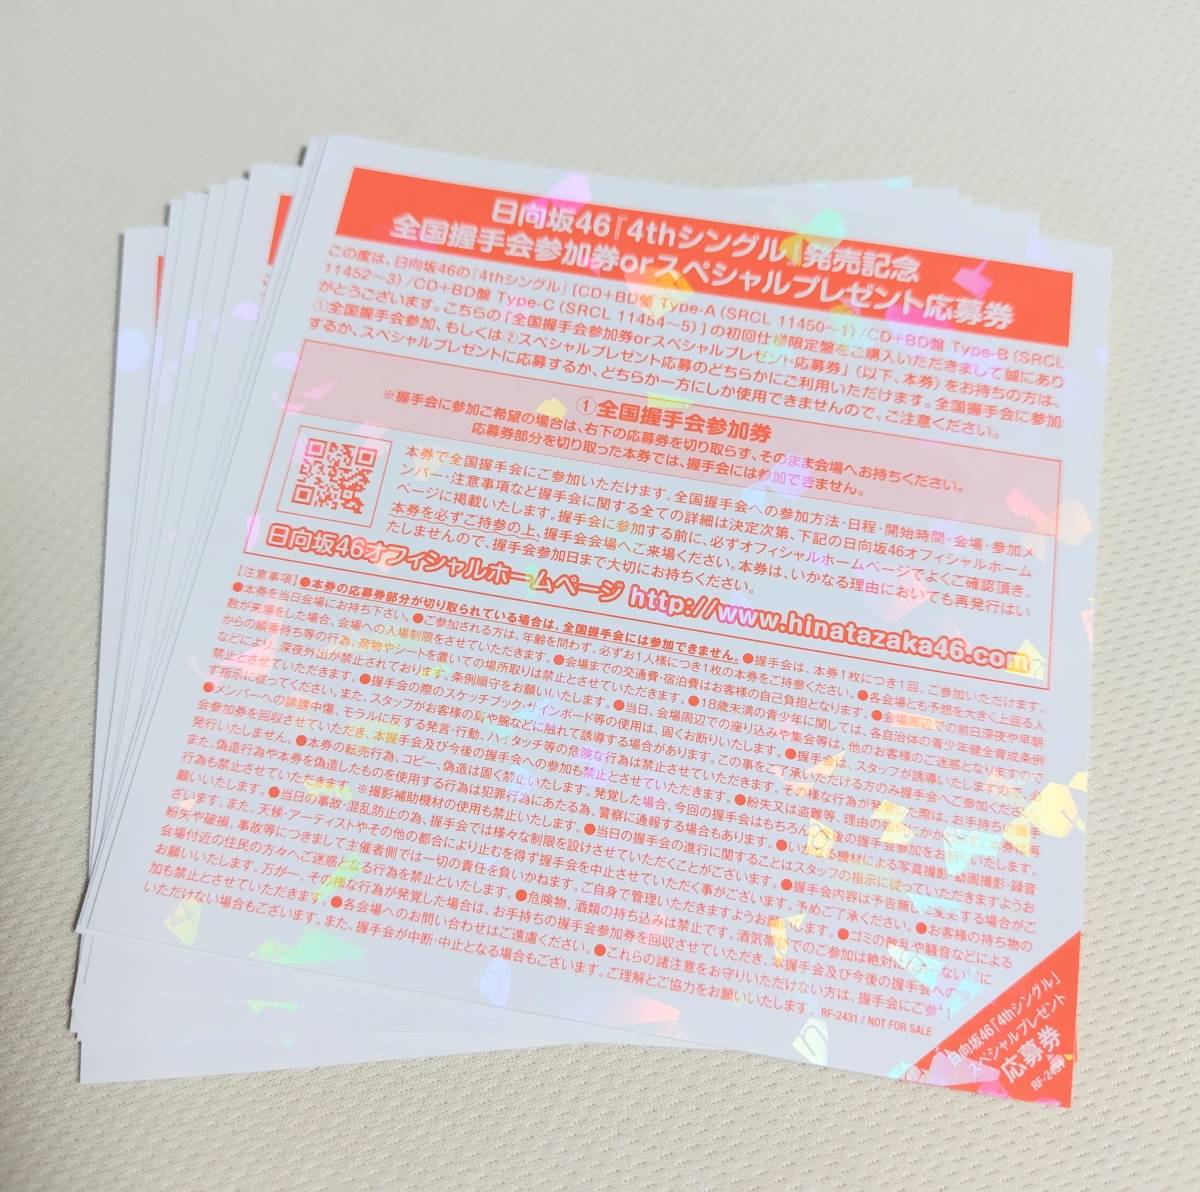 欅坂46 アンビバレント 握手券スペシャルイベント応募券 - 女性